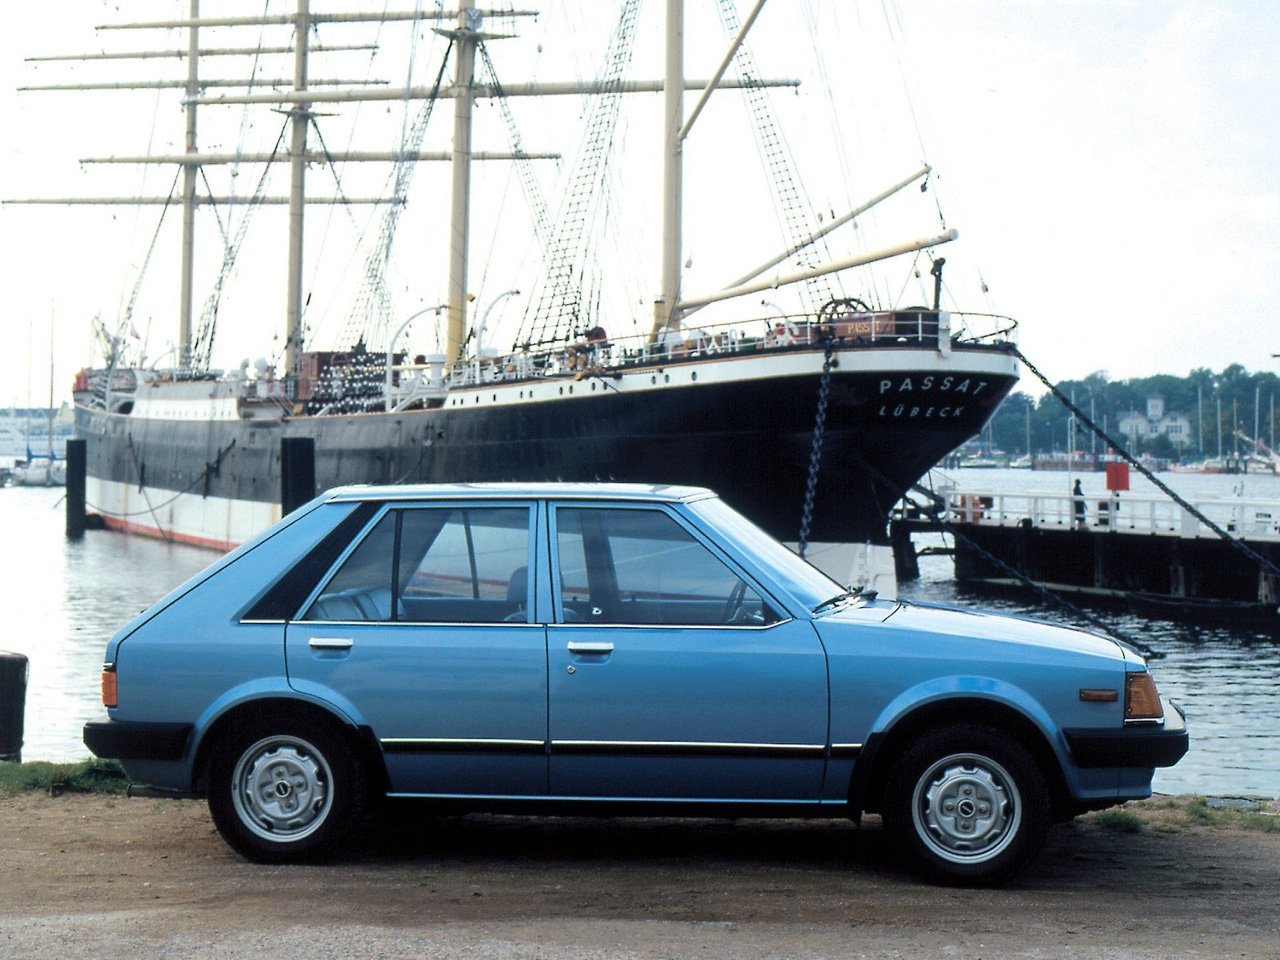 хэтчбек 5 дв. Mazda 323 1980 - 1986г выпуска модификация 1.1 MT (54 л.с.)